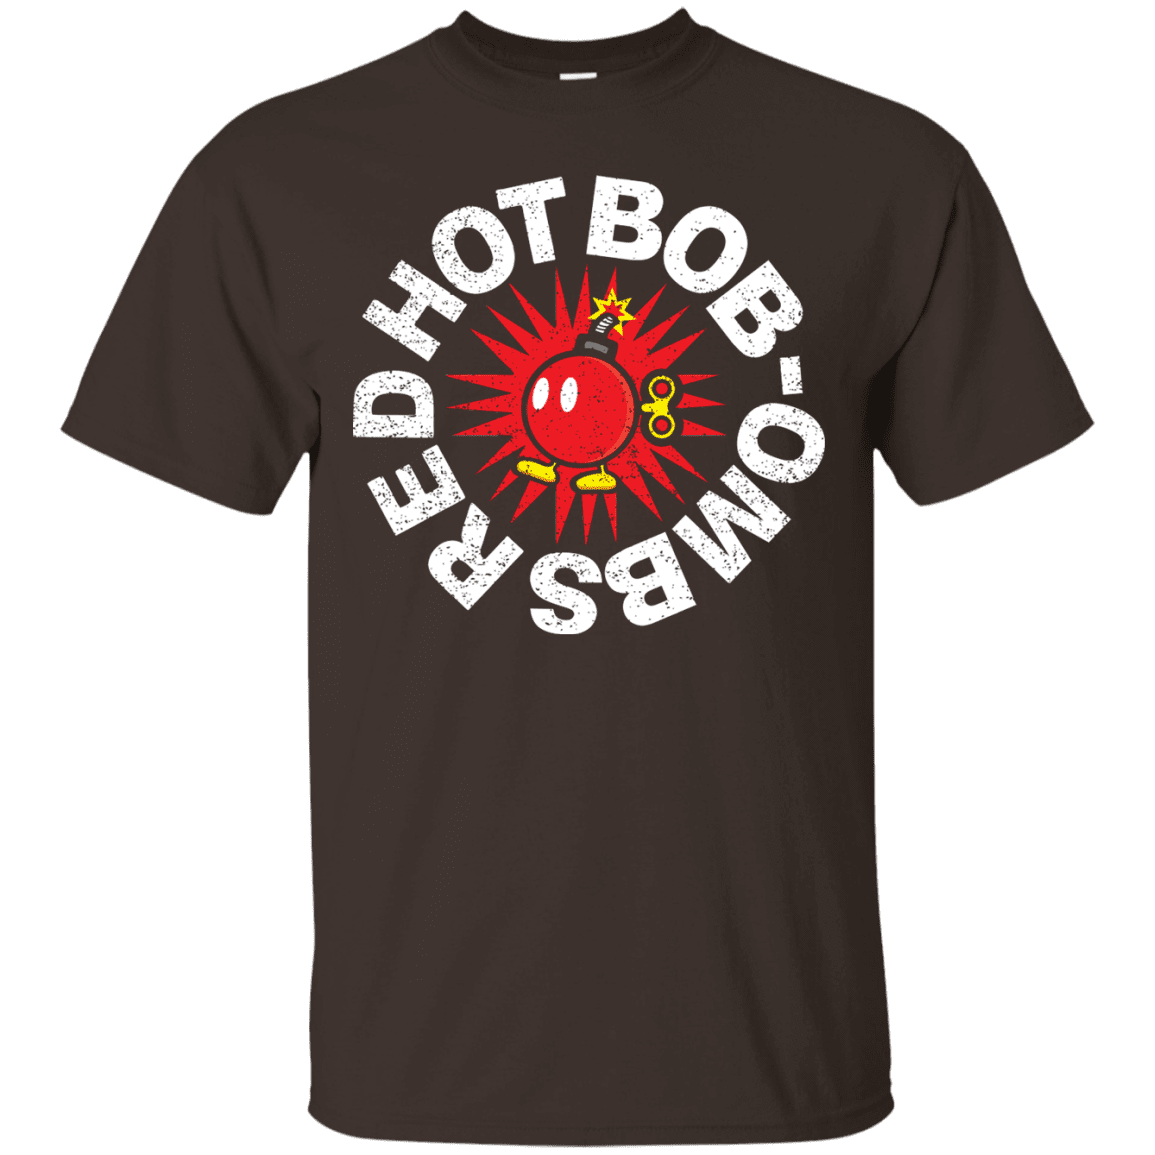 T-Shirts Dark Chocolate / S Red Hot Bob-Ombs T-Shirt